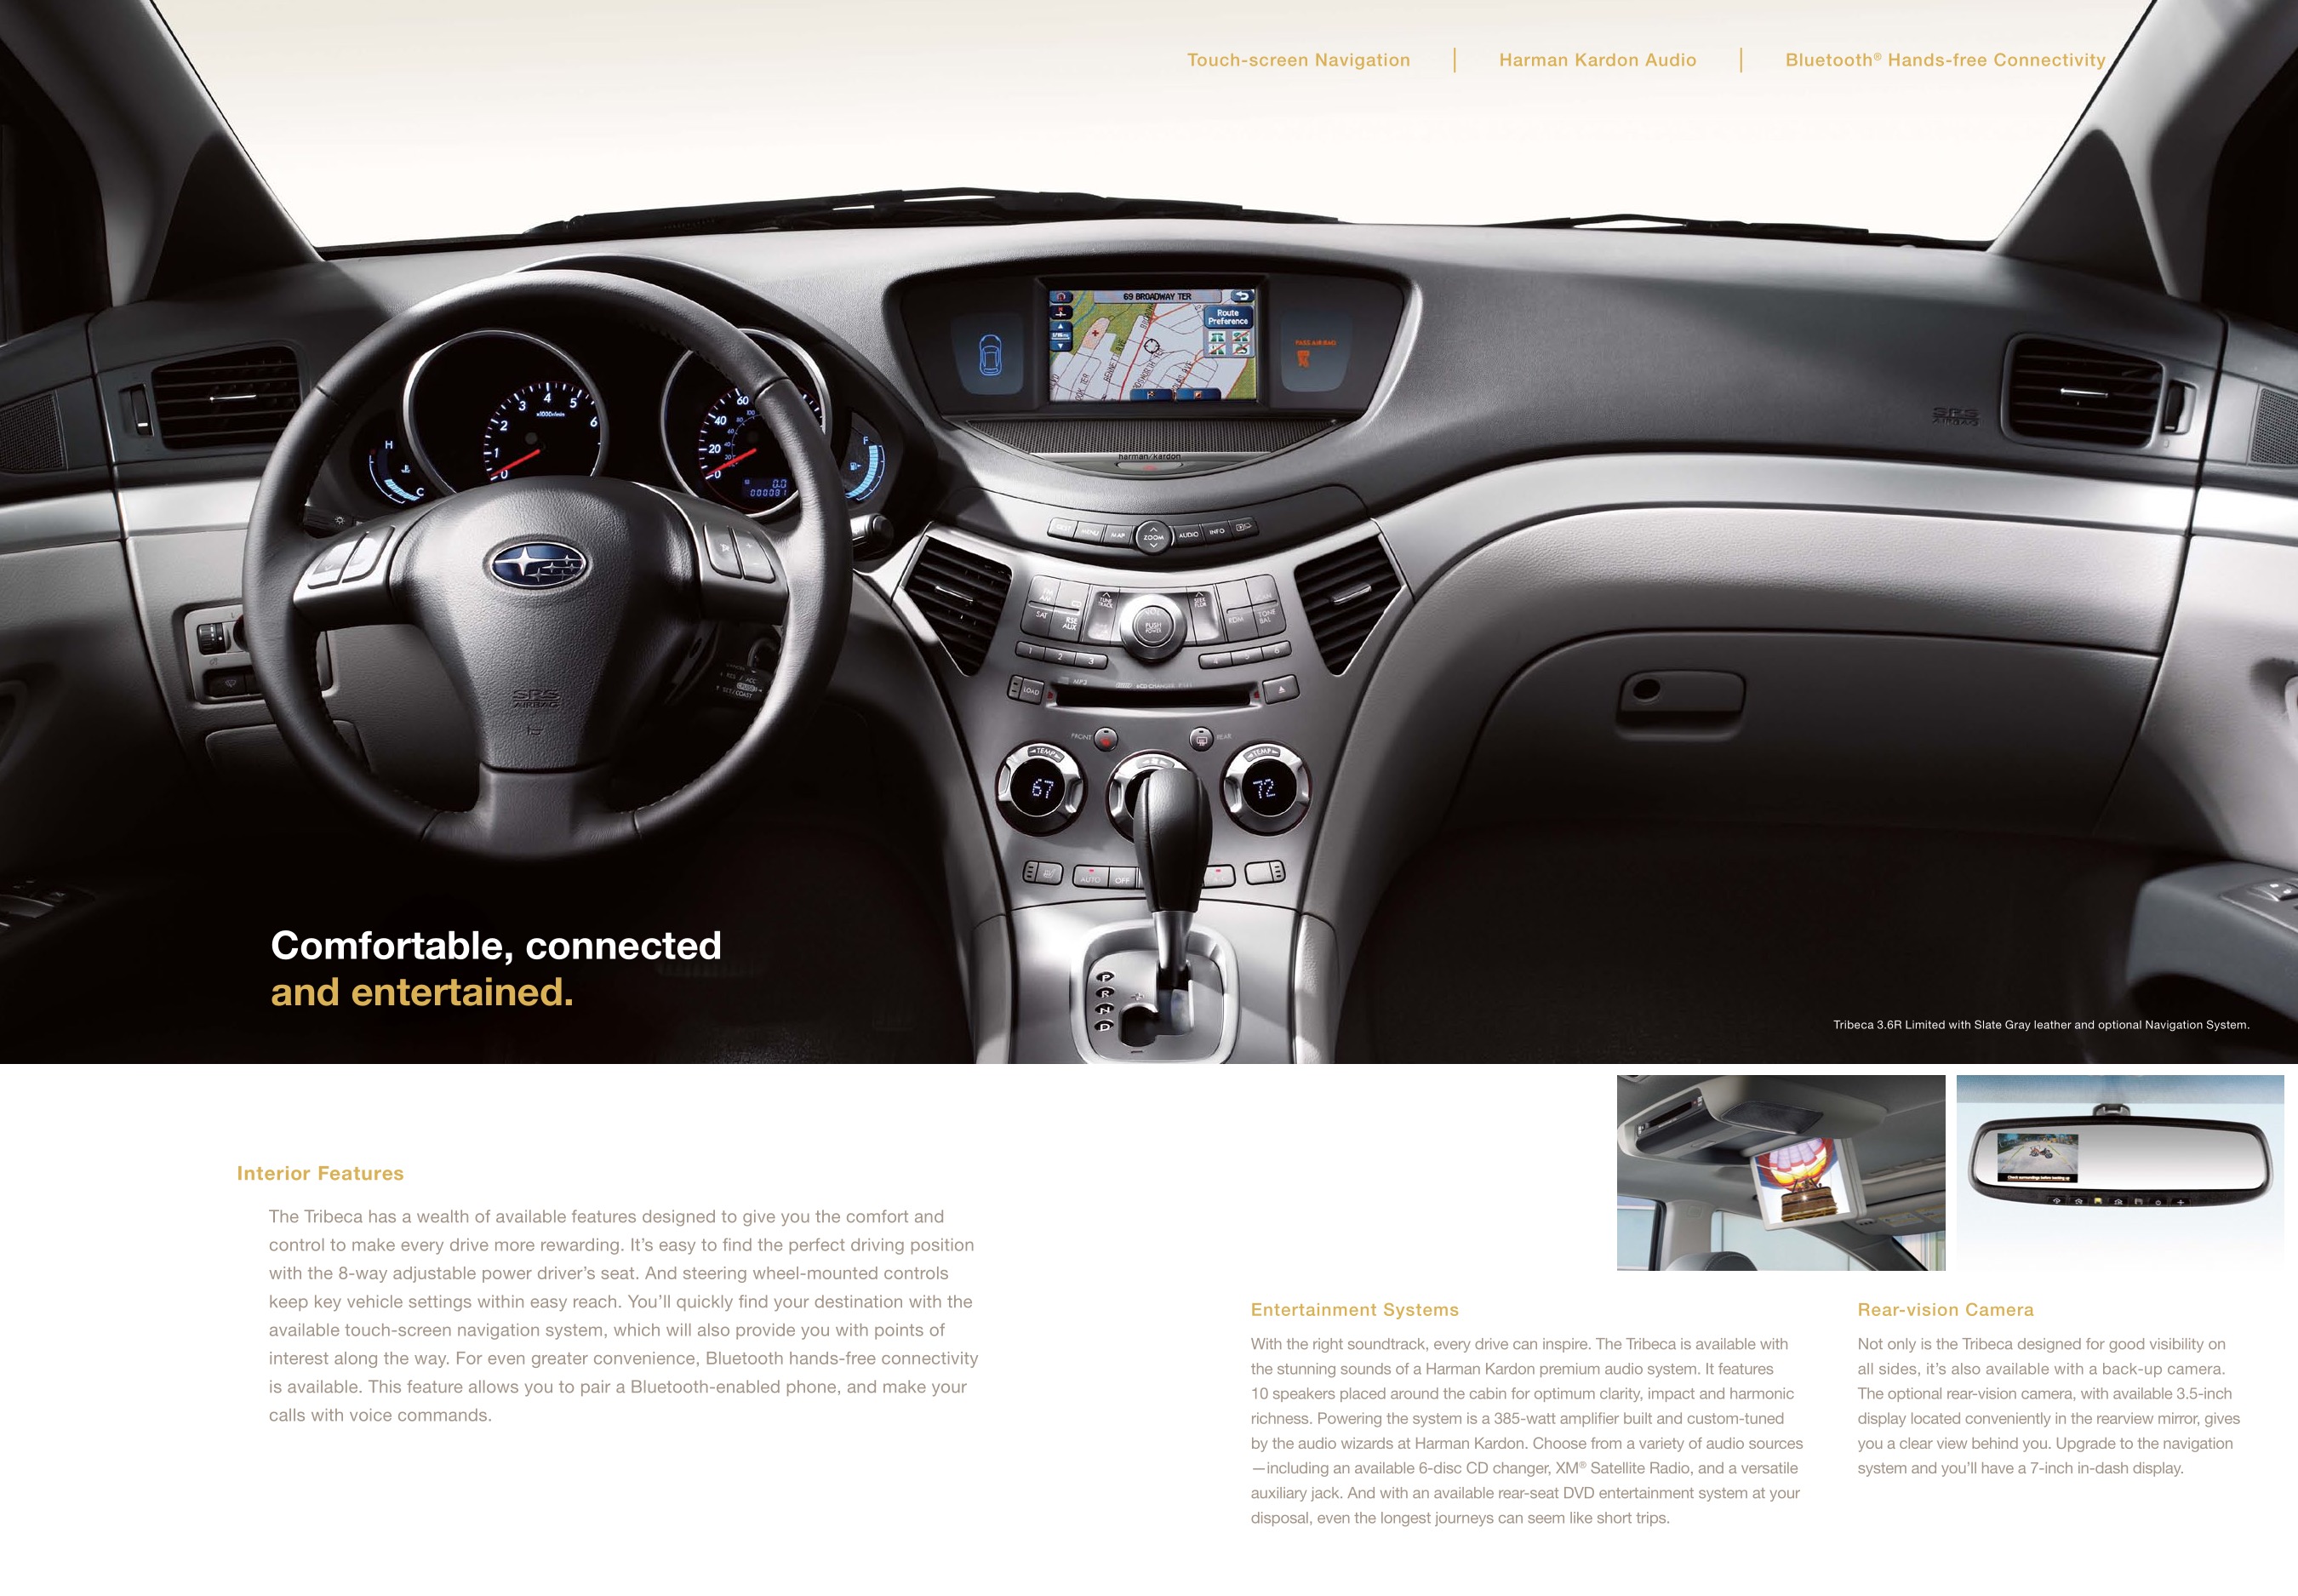 2011 Subaru Tribeca Brochure Page 4